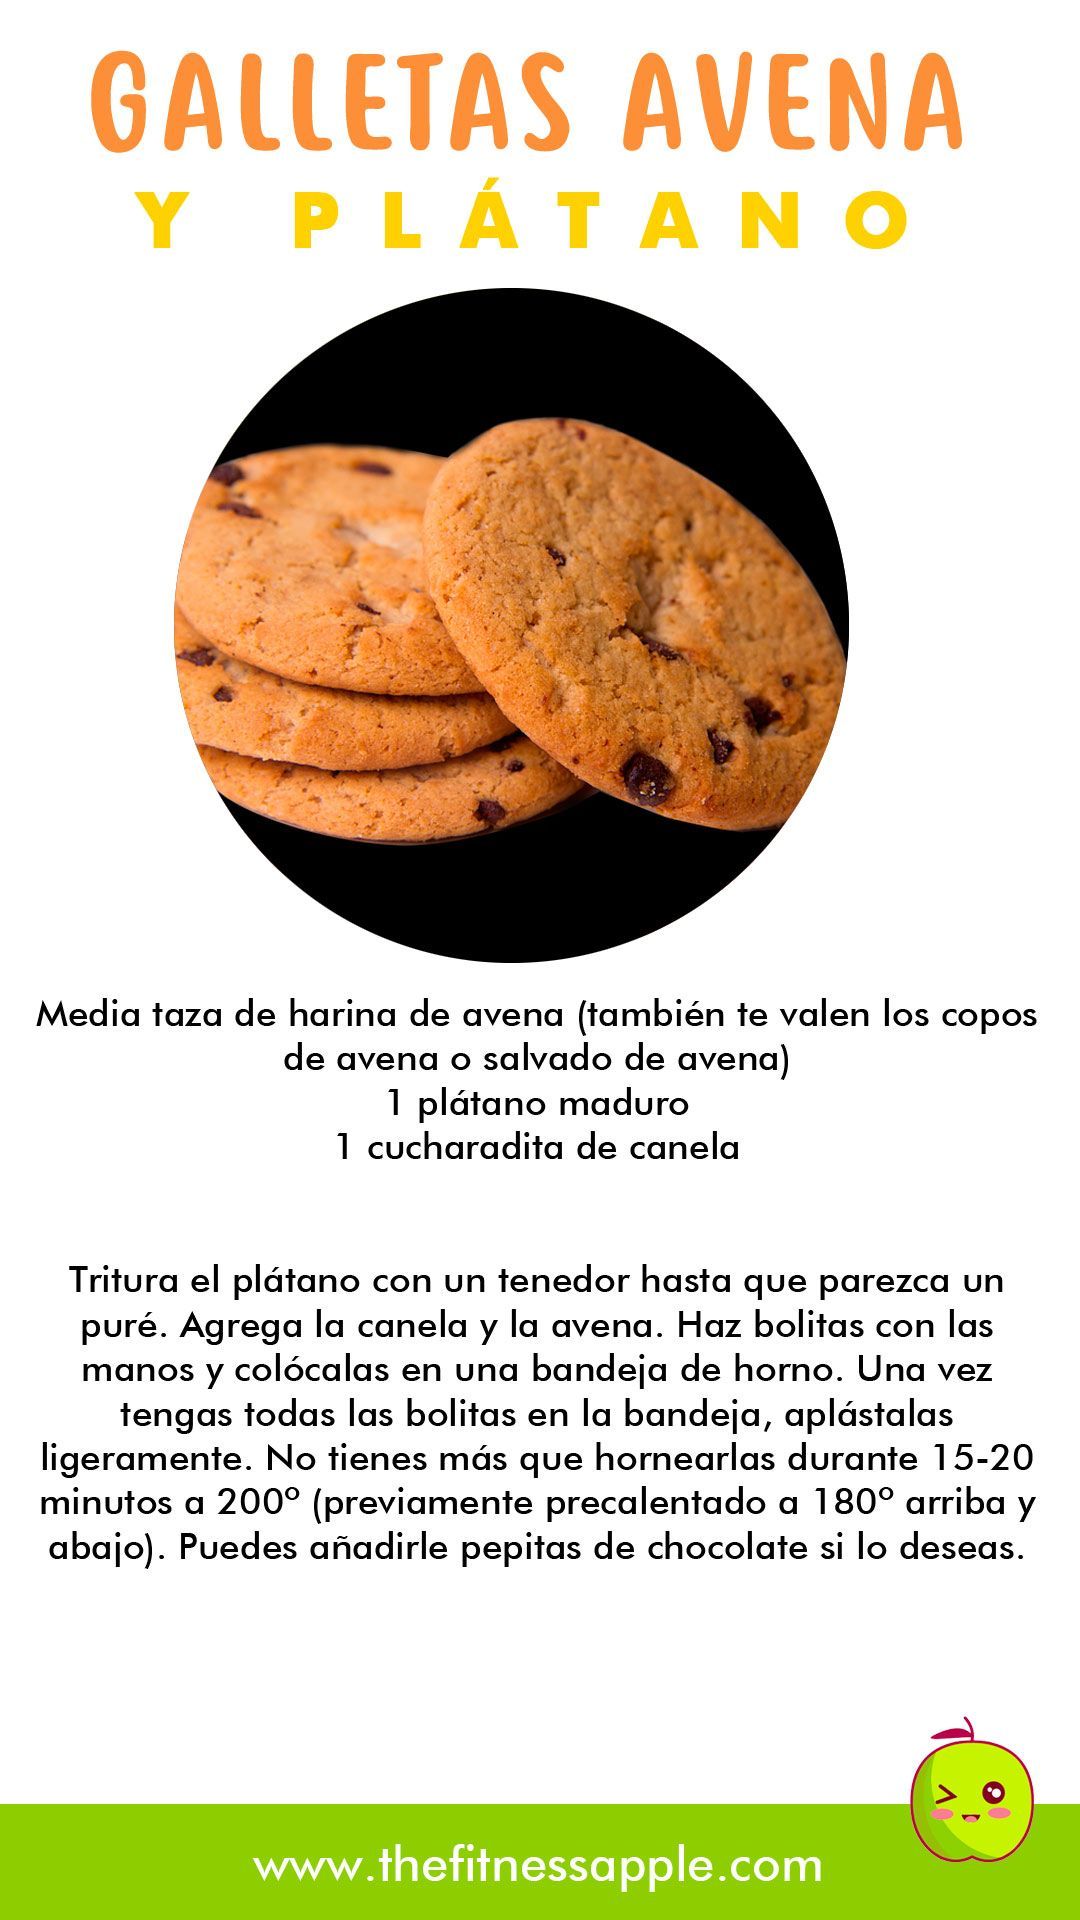 Galletas de Avena y Pl?tano - Galletas de Avena y Pl?tano -   15 fitness Recetas galletas ideas